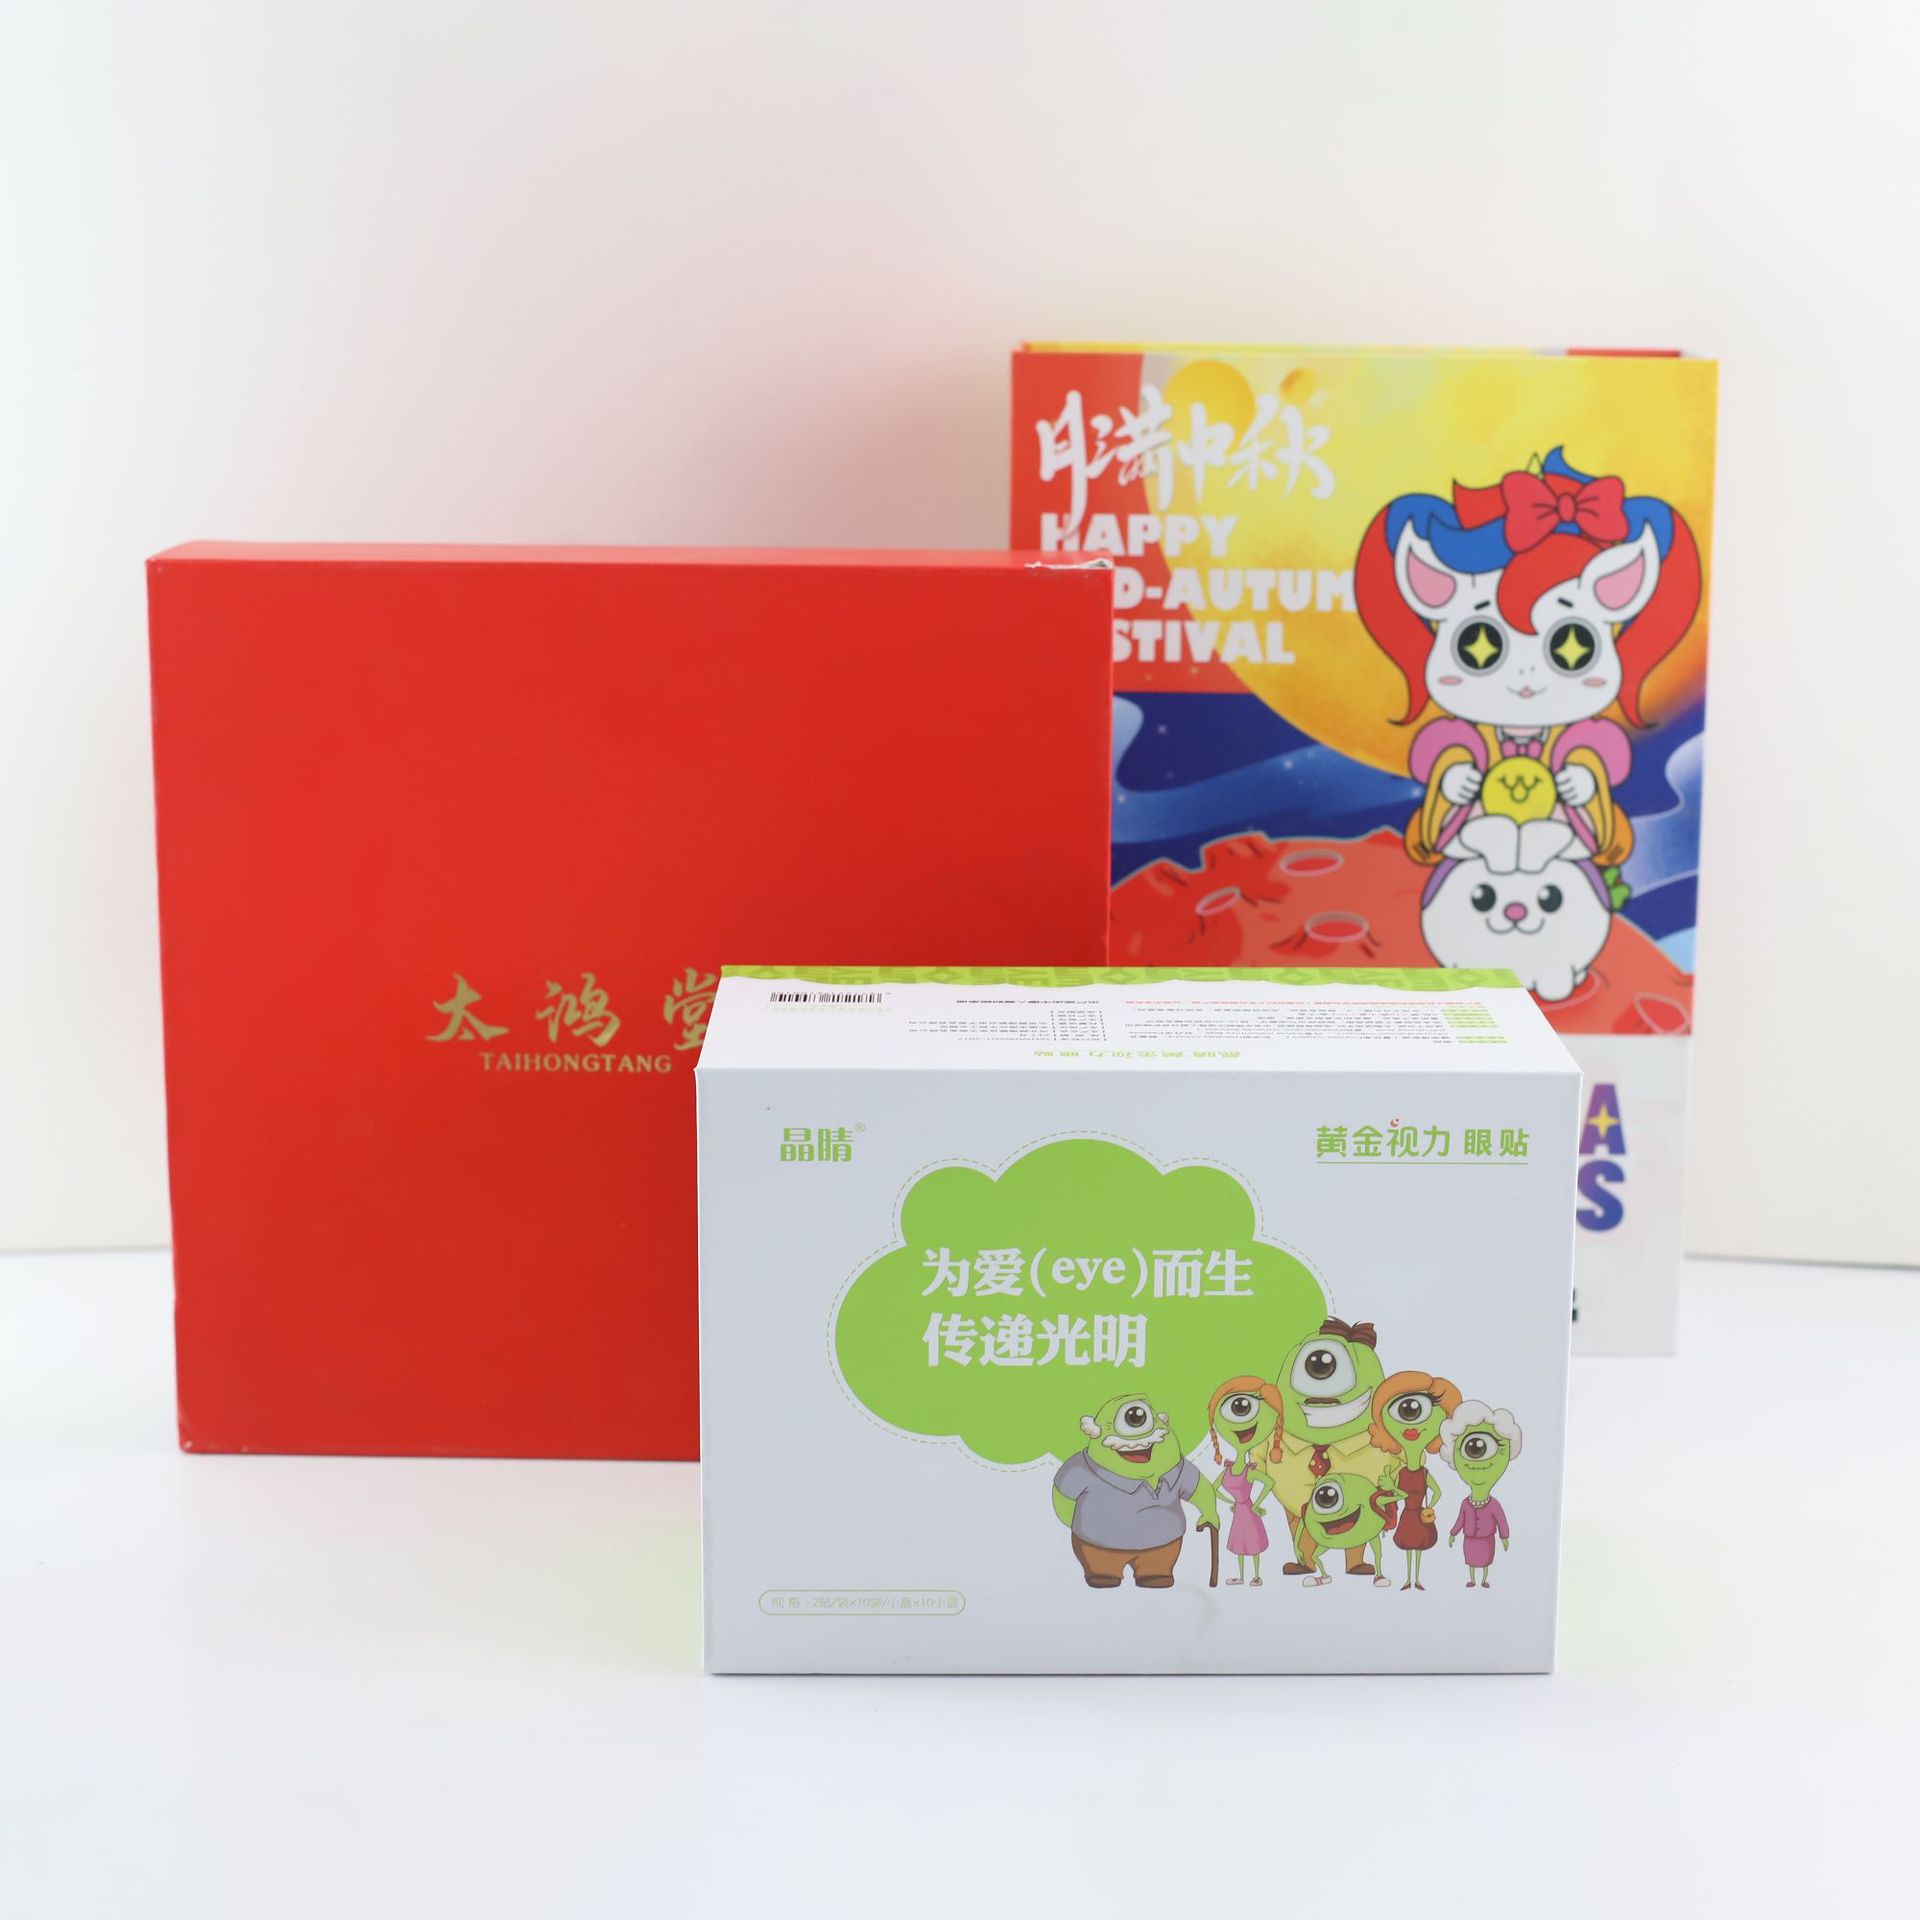 Tiandigai Gift Box White Carton Box Book Box Gift Packaging Box Color Box Printing Nano Uv Aircraft Box